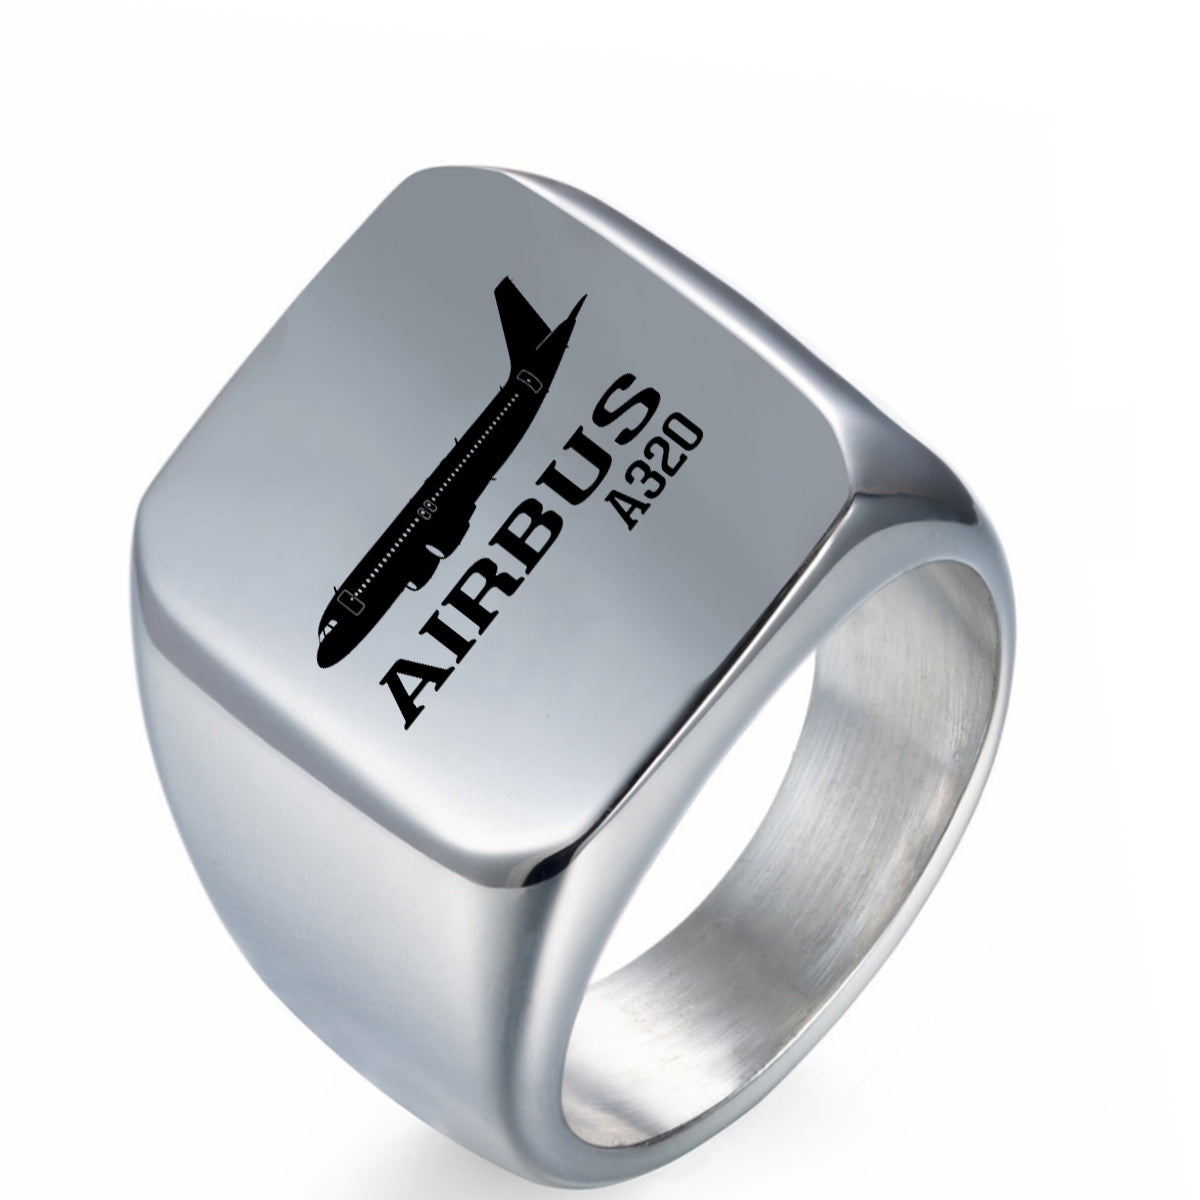 Airbus A320 Printed Designed Men Rings